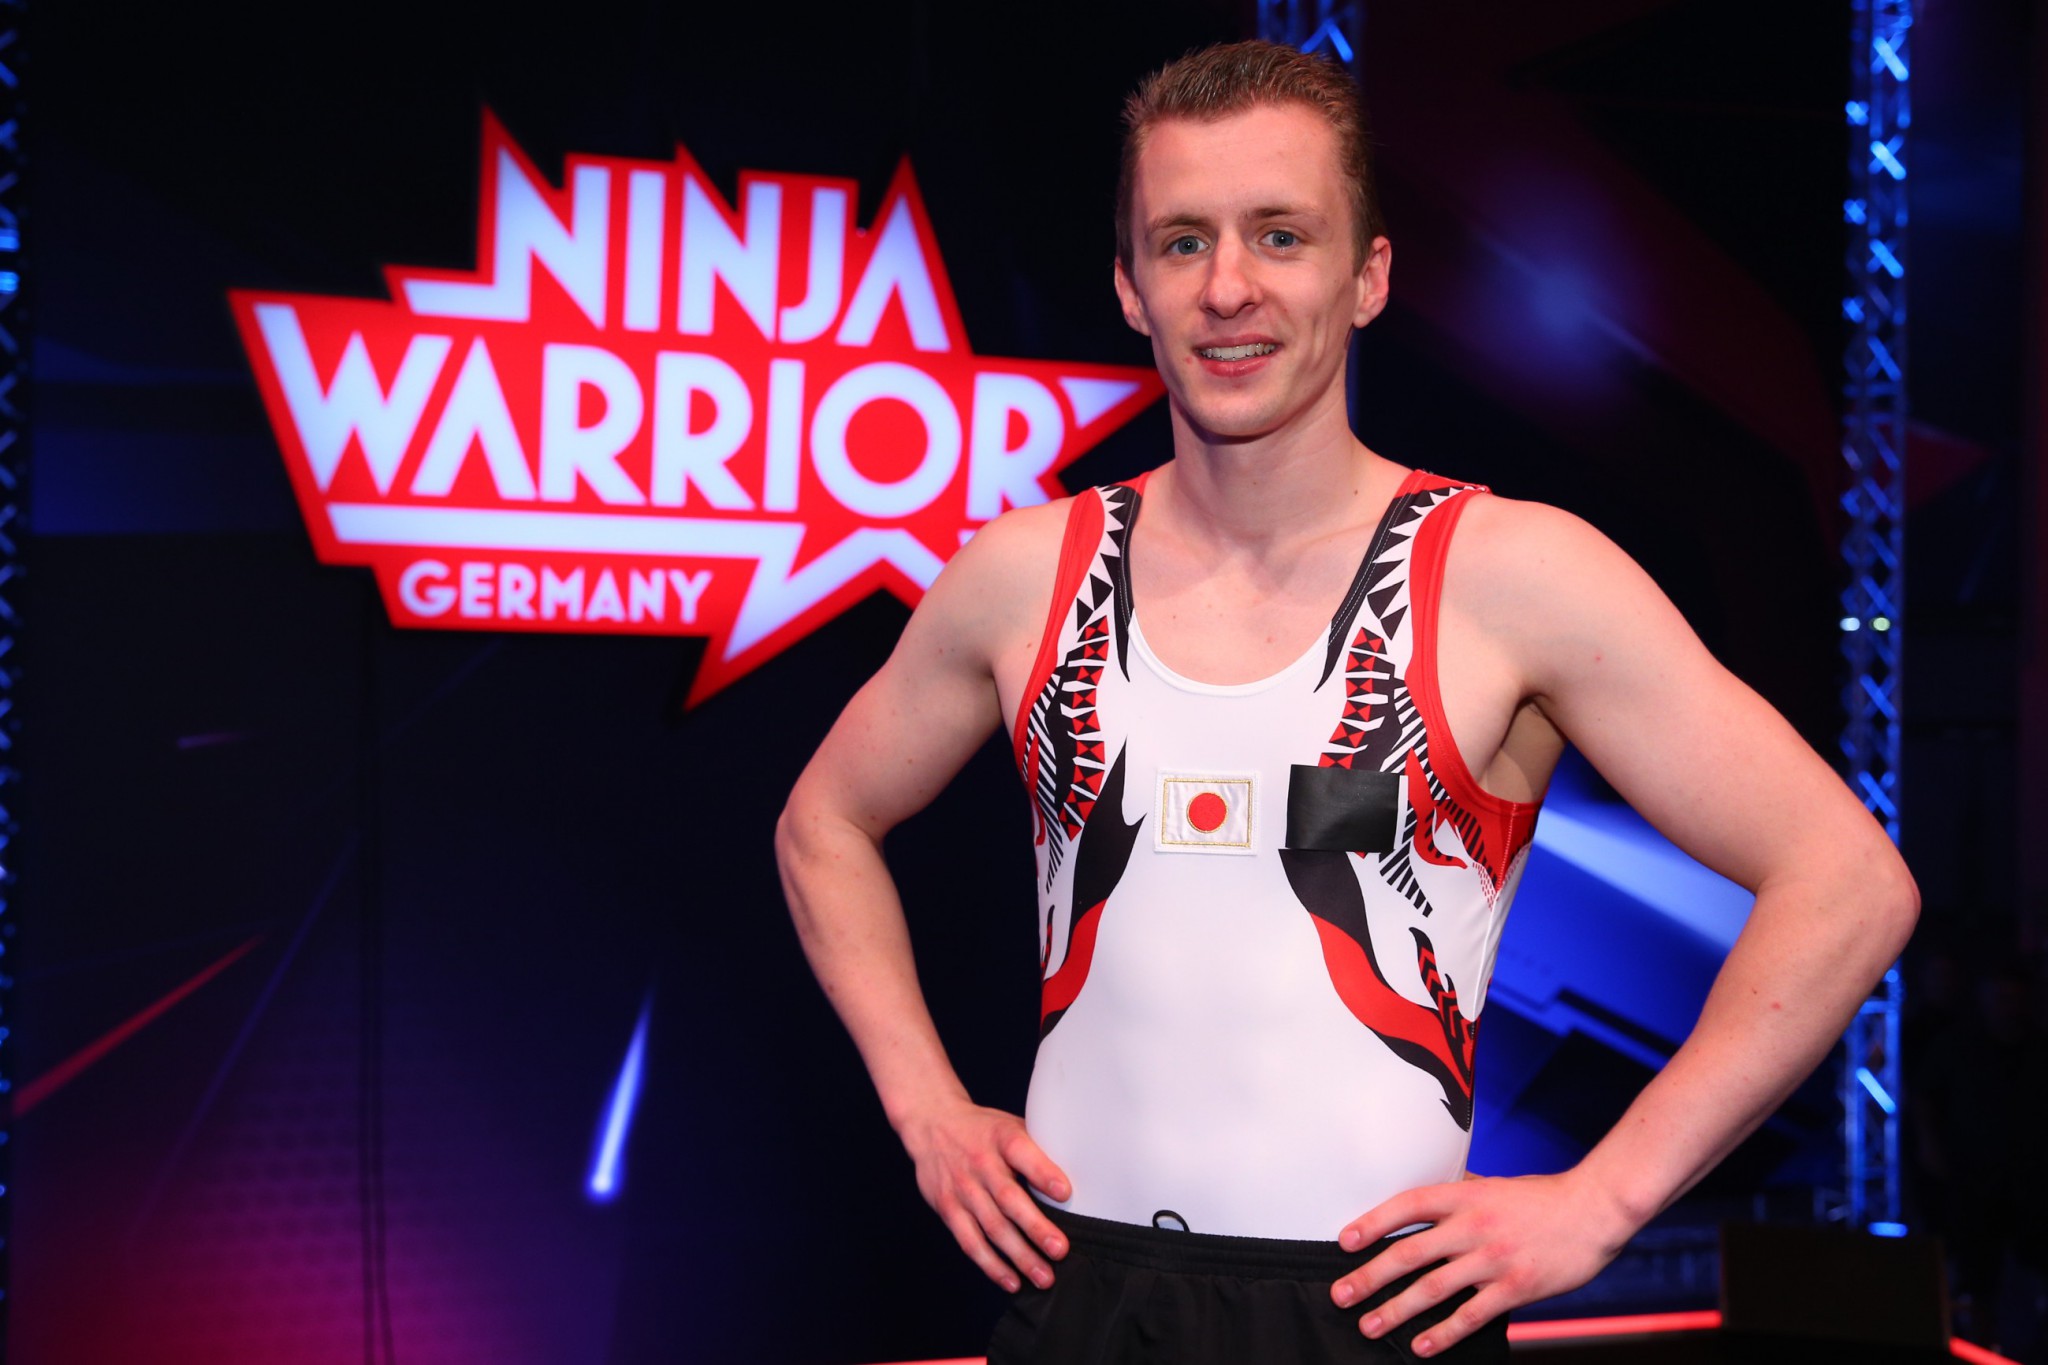 Ninja-Warrior-2016-Daniel-Schmidt